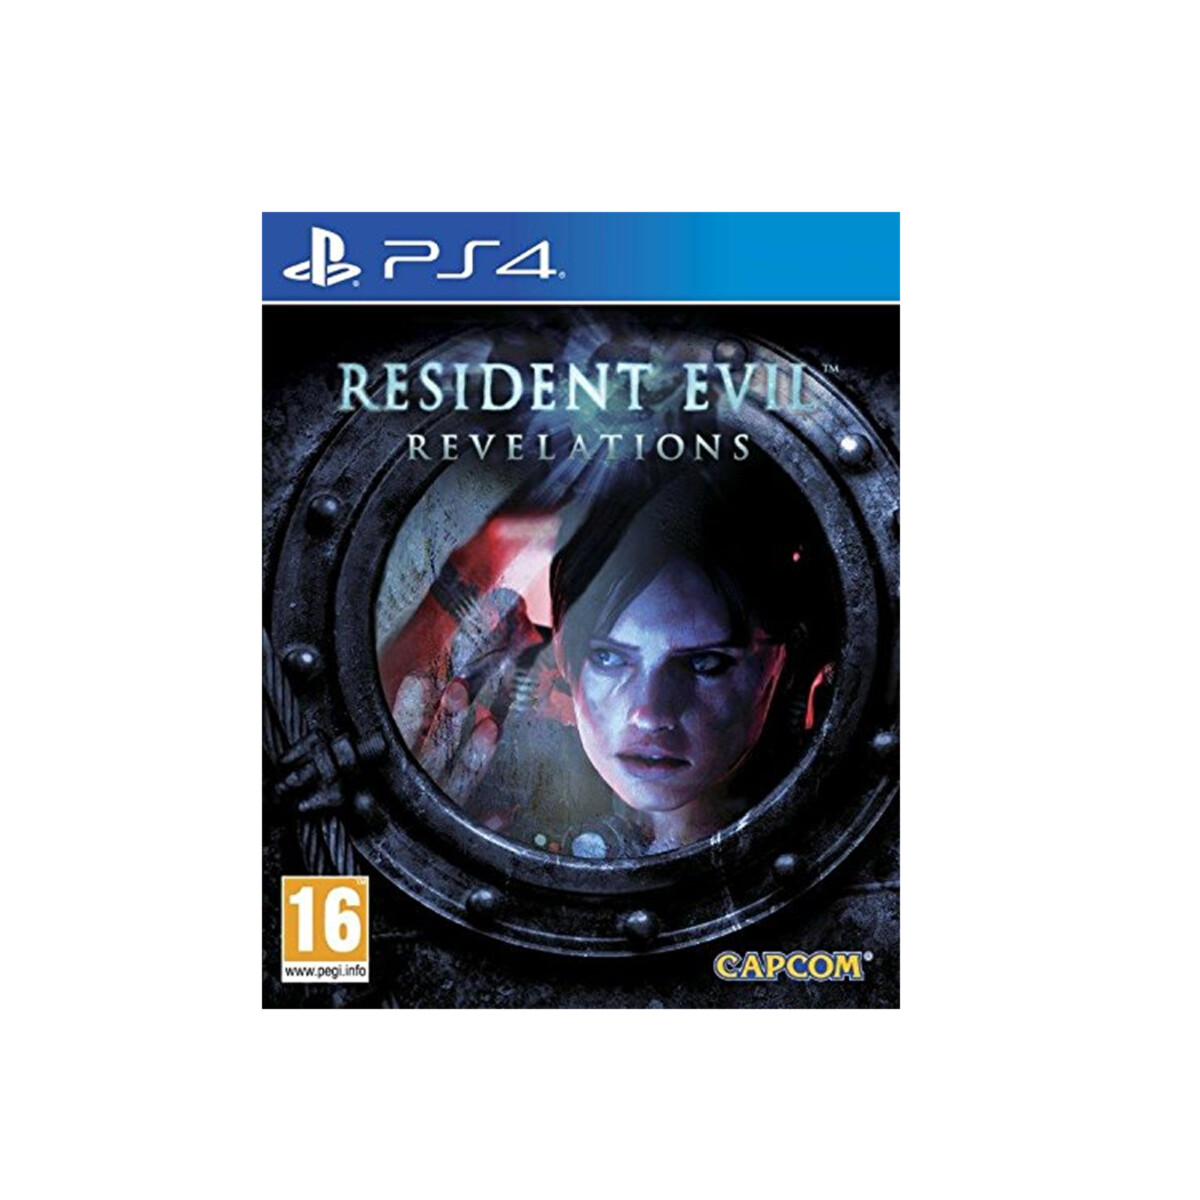 PS4 Resident Evil Revelations 